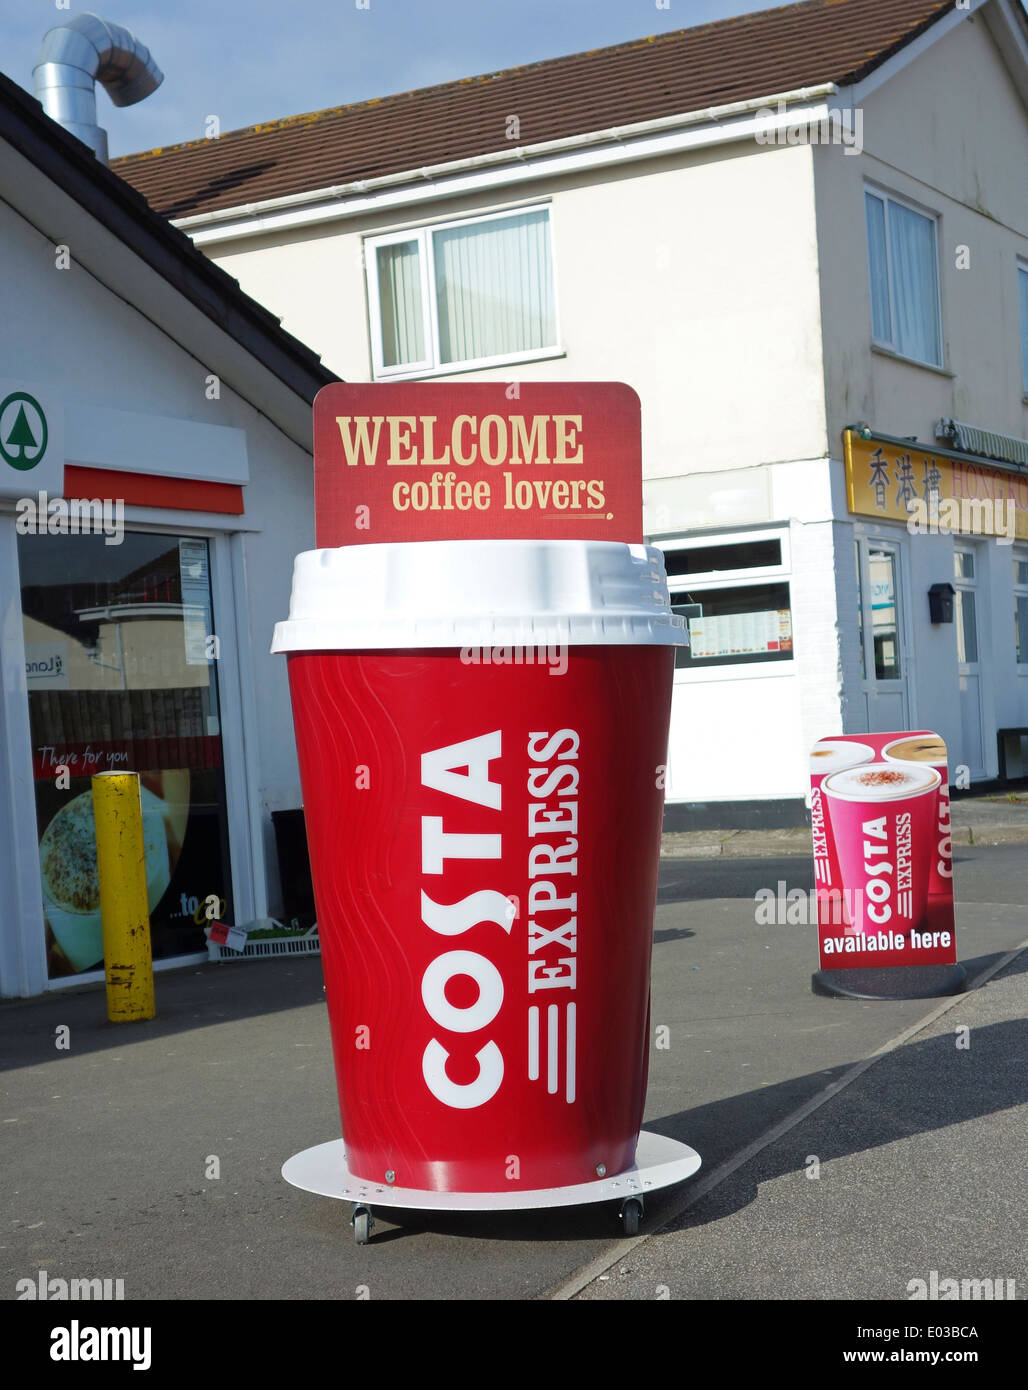 Eine riesige Costa Kaffeetasse Werbung Anzeige Stockfoto